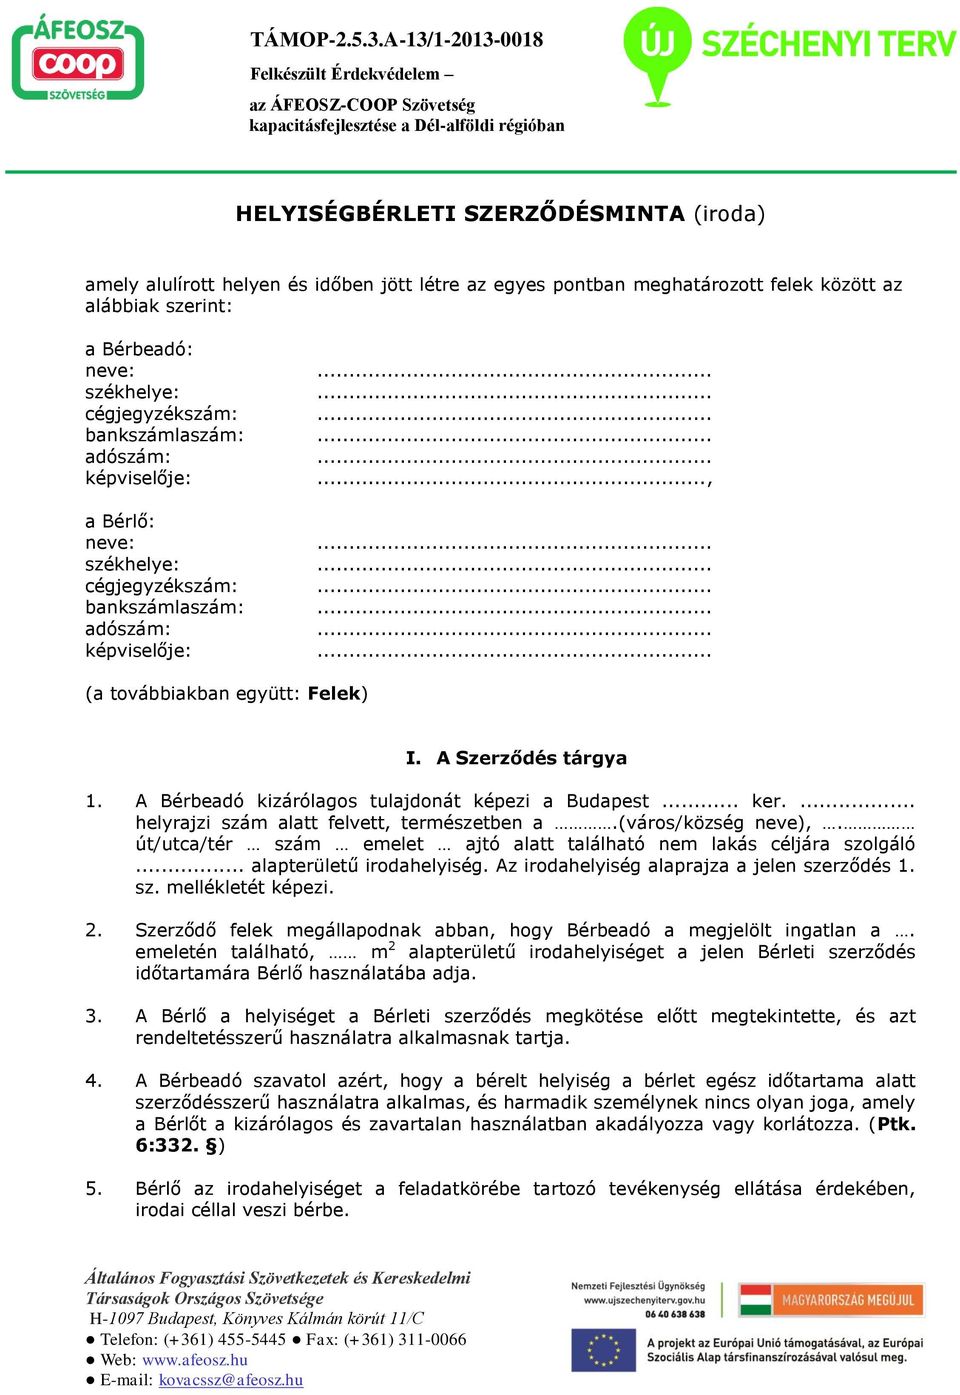 HELYISÉGBÉRLETI SZERZŐDÉSMINTA (iroda) - PDF Free Download